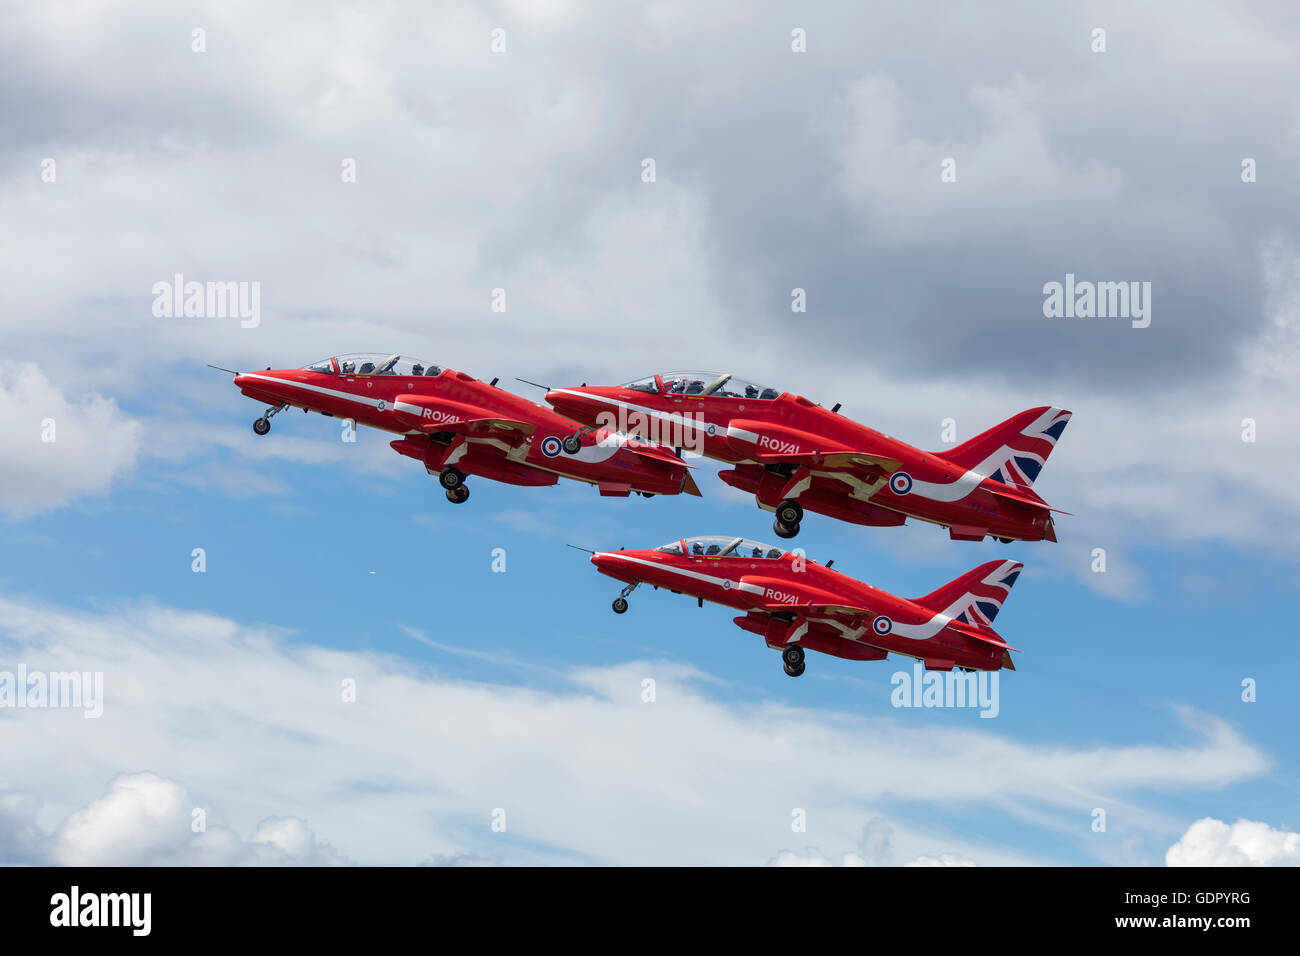 Trois flèches rouges RAF Hawk jets dans le ciel peu après le décollage Banque D'Images